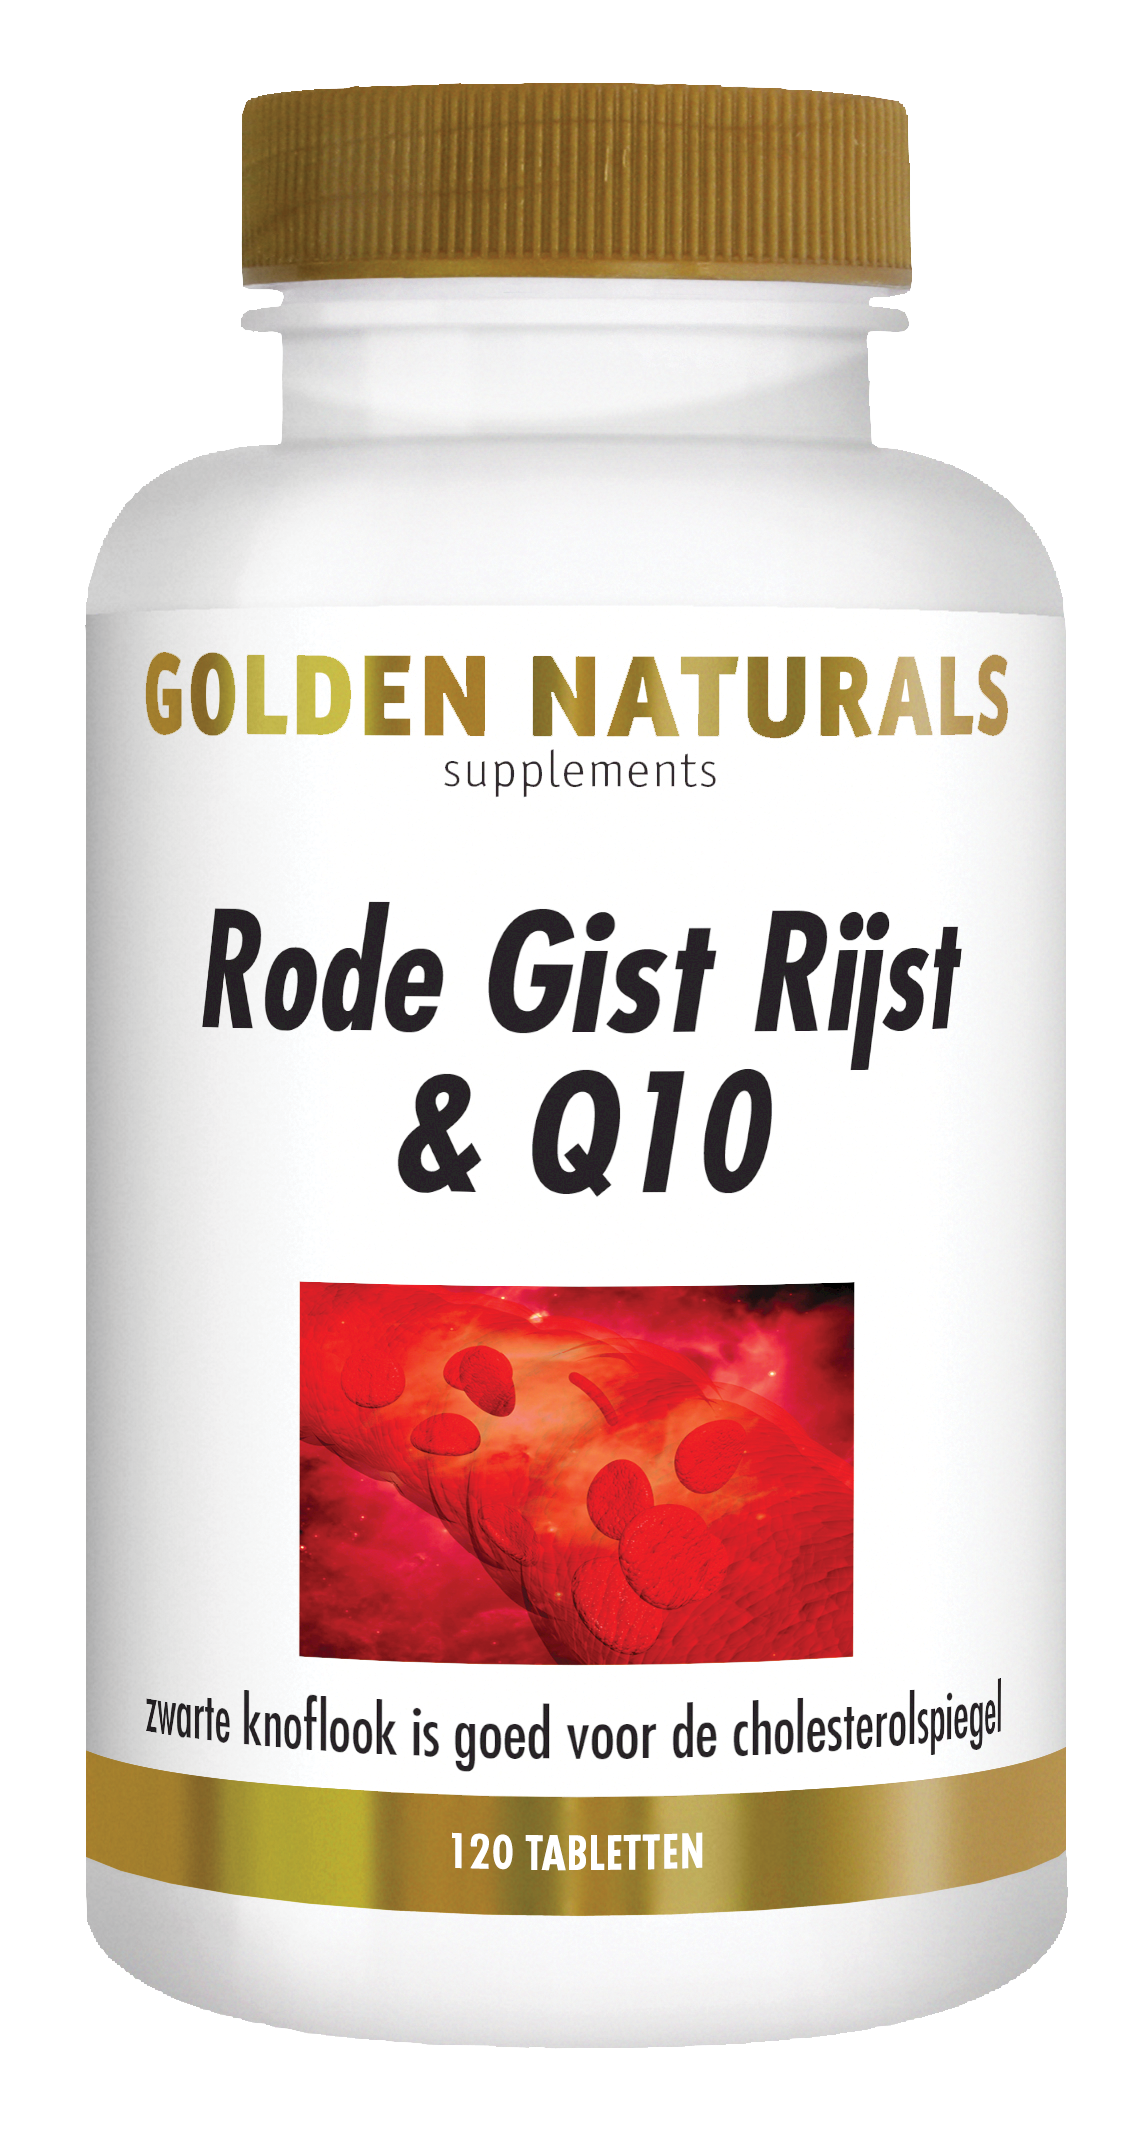 Verniel Arthur Conan Doyle weerstand bieden Golden Naturals Rode Gist Rijst & Q10 kopen? - GoldenNaturals.nl